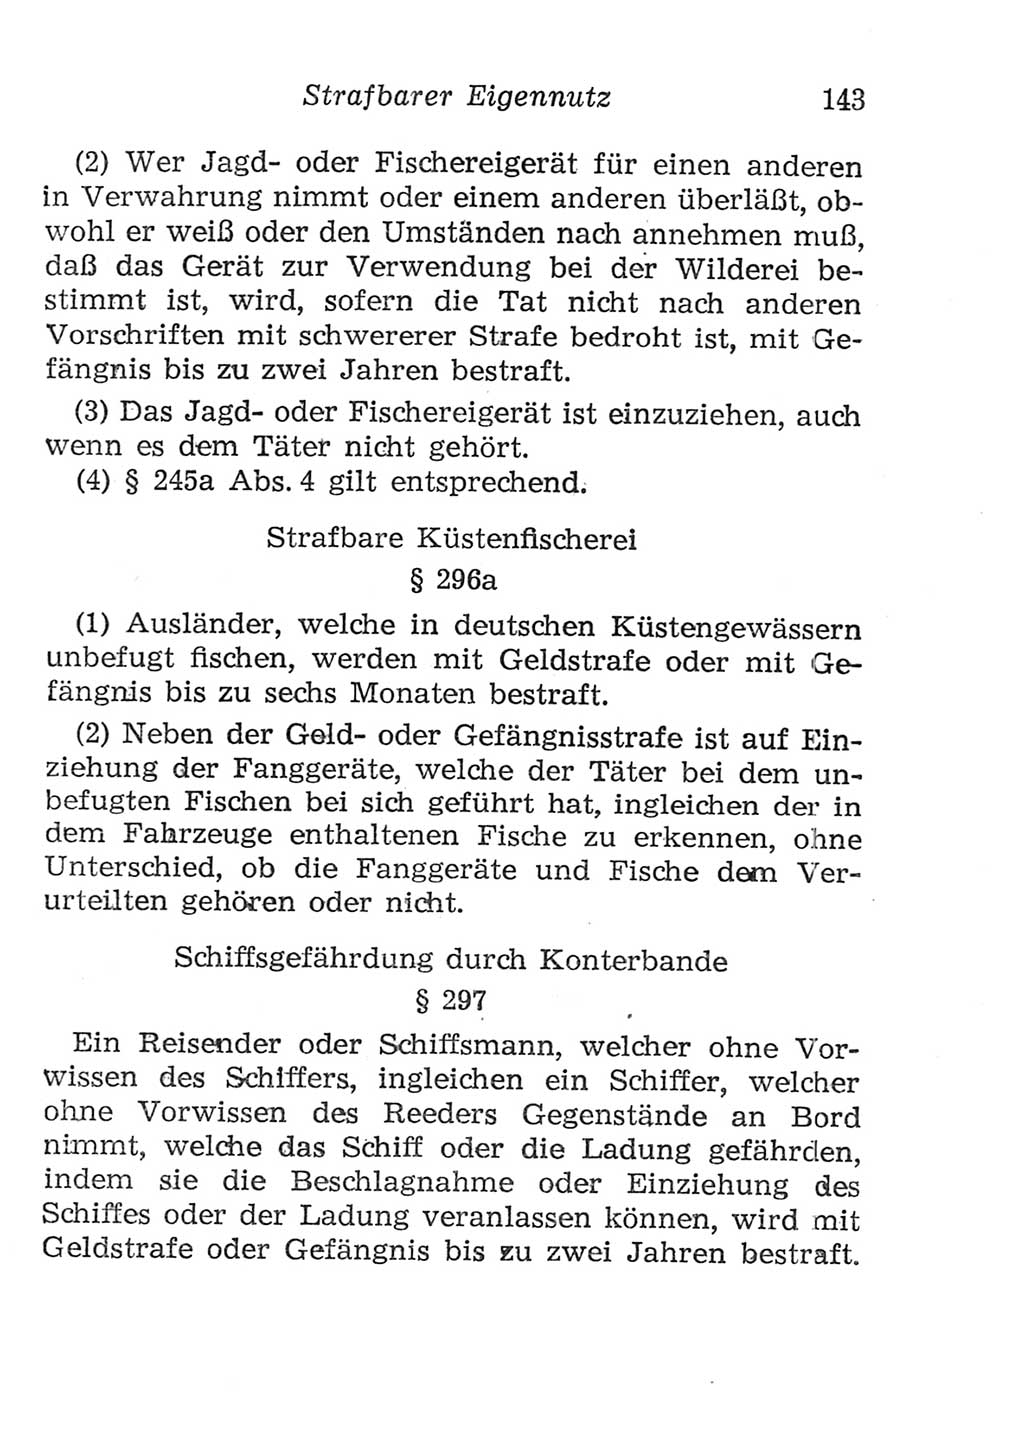 Strafgesetzbuch (StGB) und andere Strafgesetze [Deutsche Demokratische Republik (DDR)] 1957, Seite 143 (StGB Strafges. DDR 1957, S. 143)